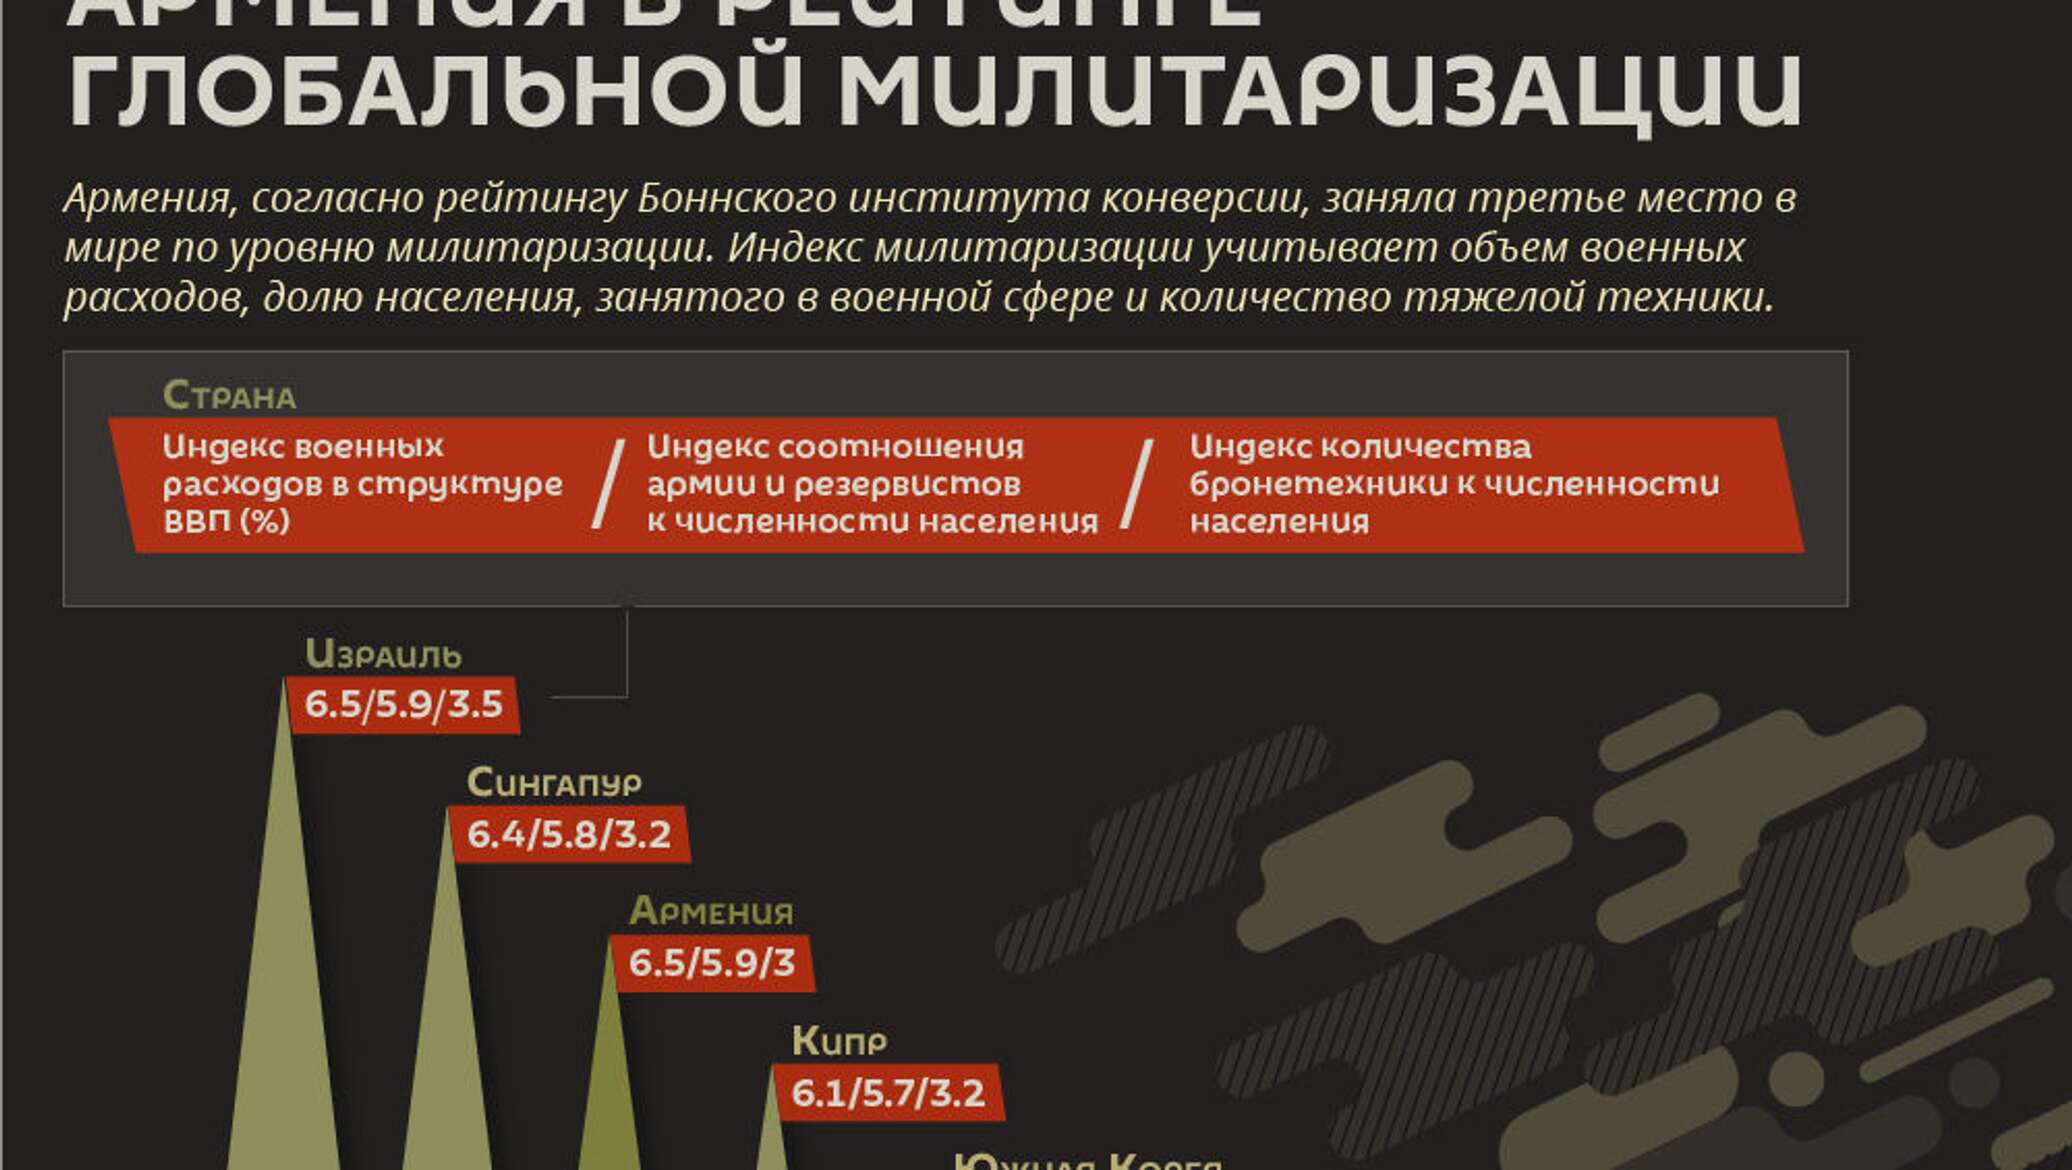 Милитаризация страны. Армения инфографика. Экономика Армении инфографика. Военная безопасность инфографика 2020. Милитаризация страны это